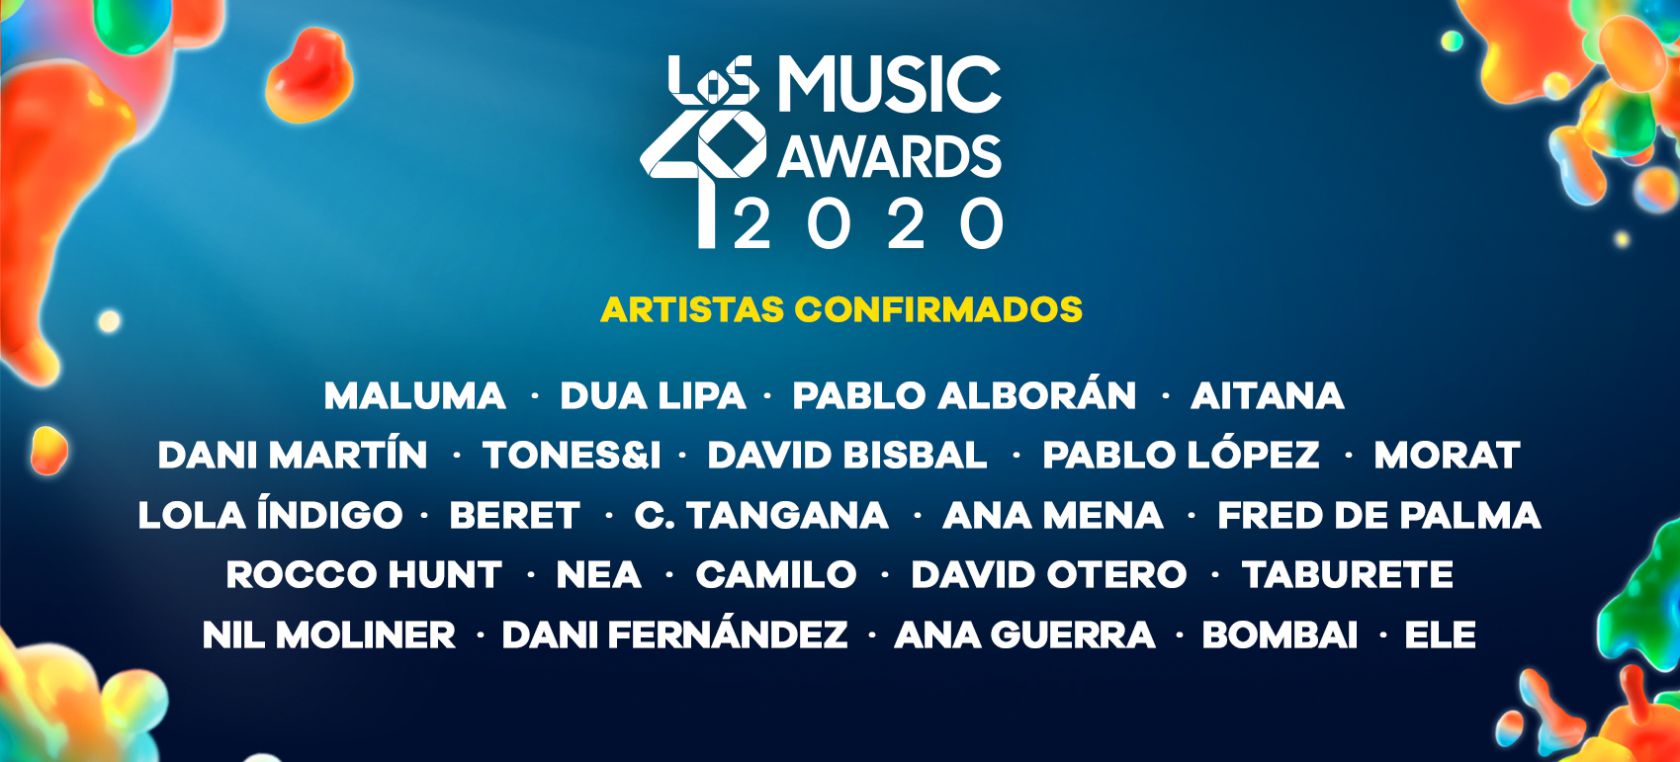 LOS40 Music Awards 2020